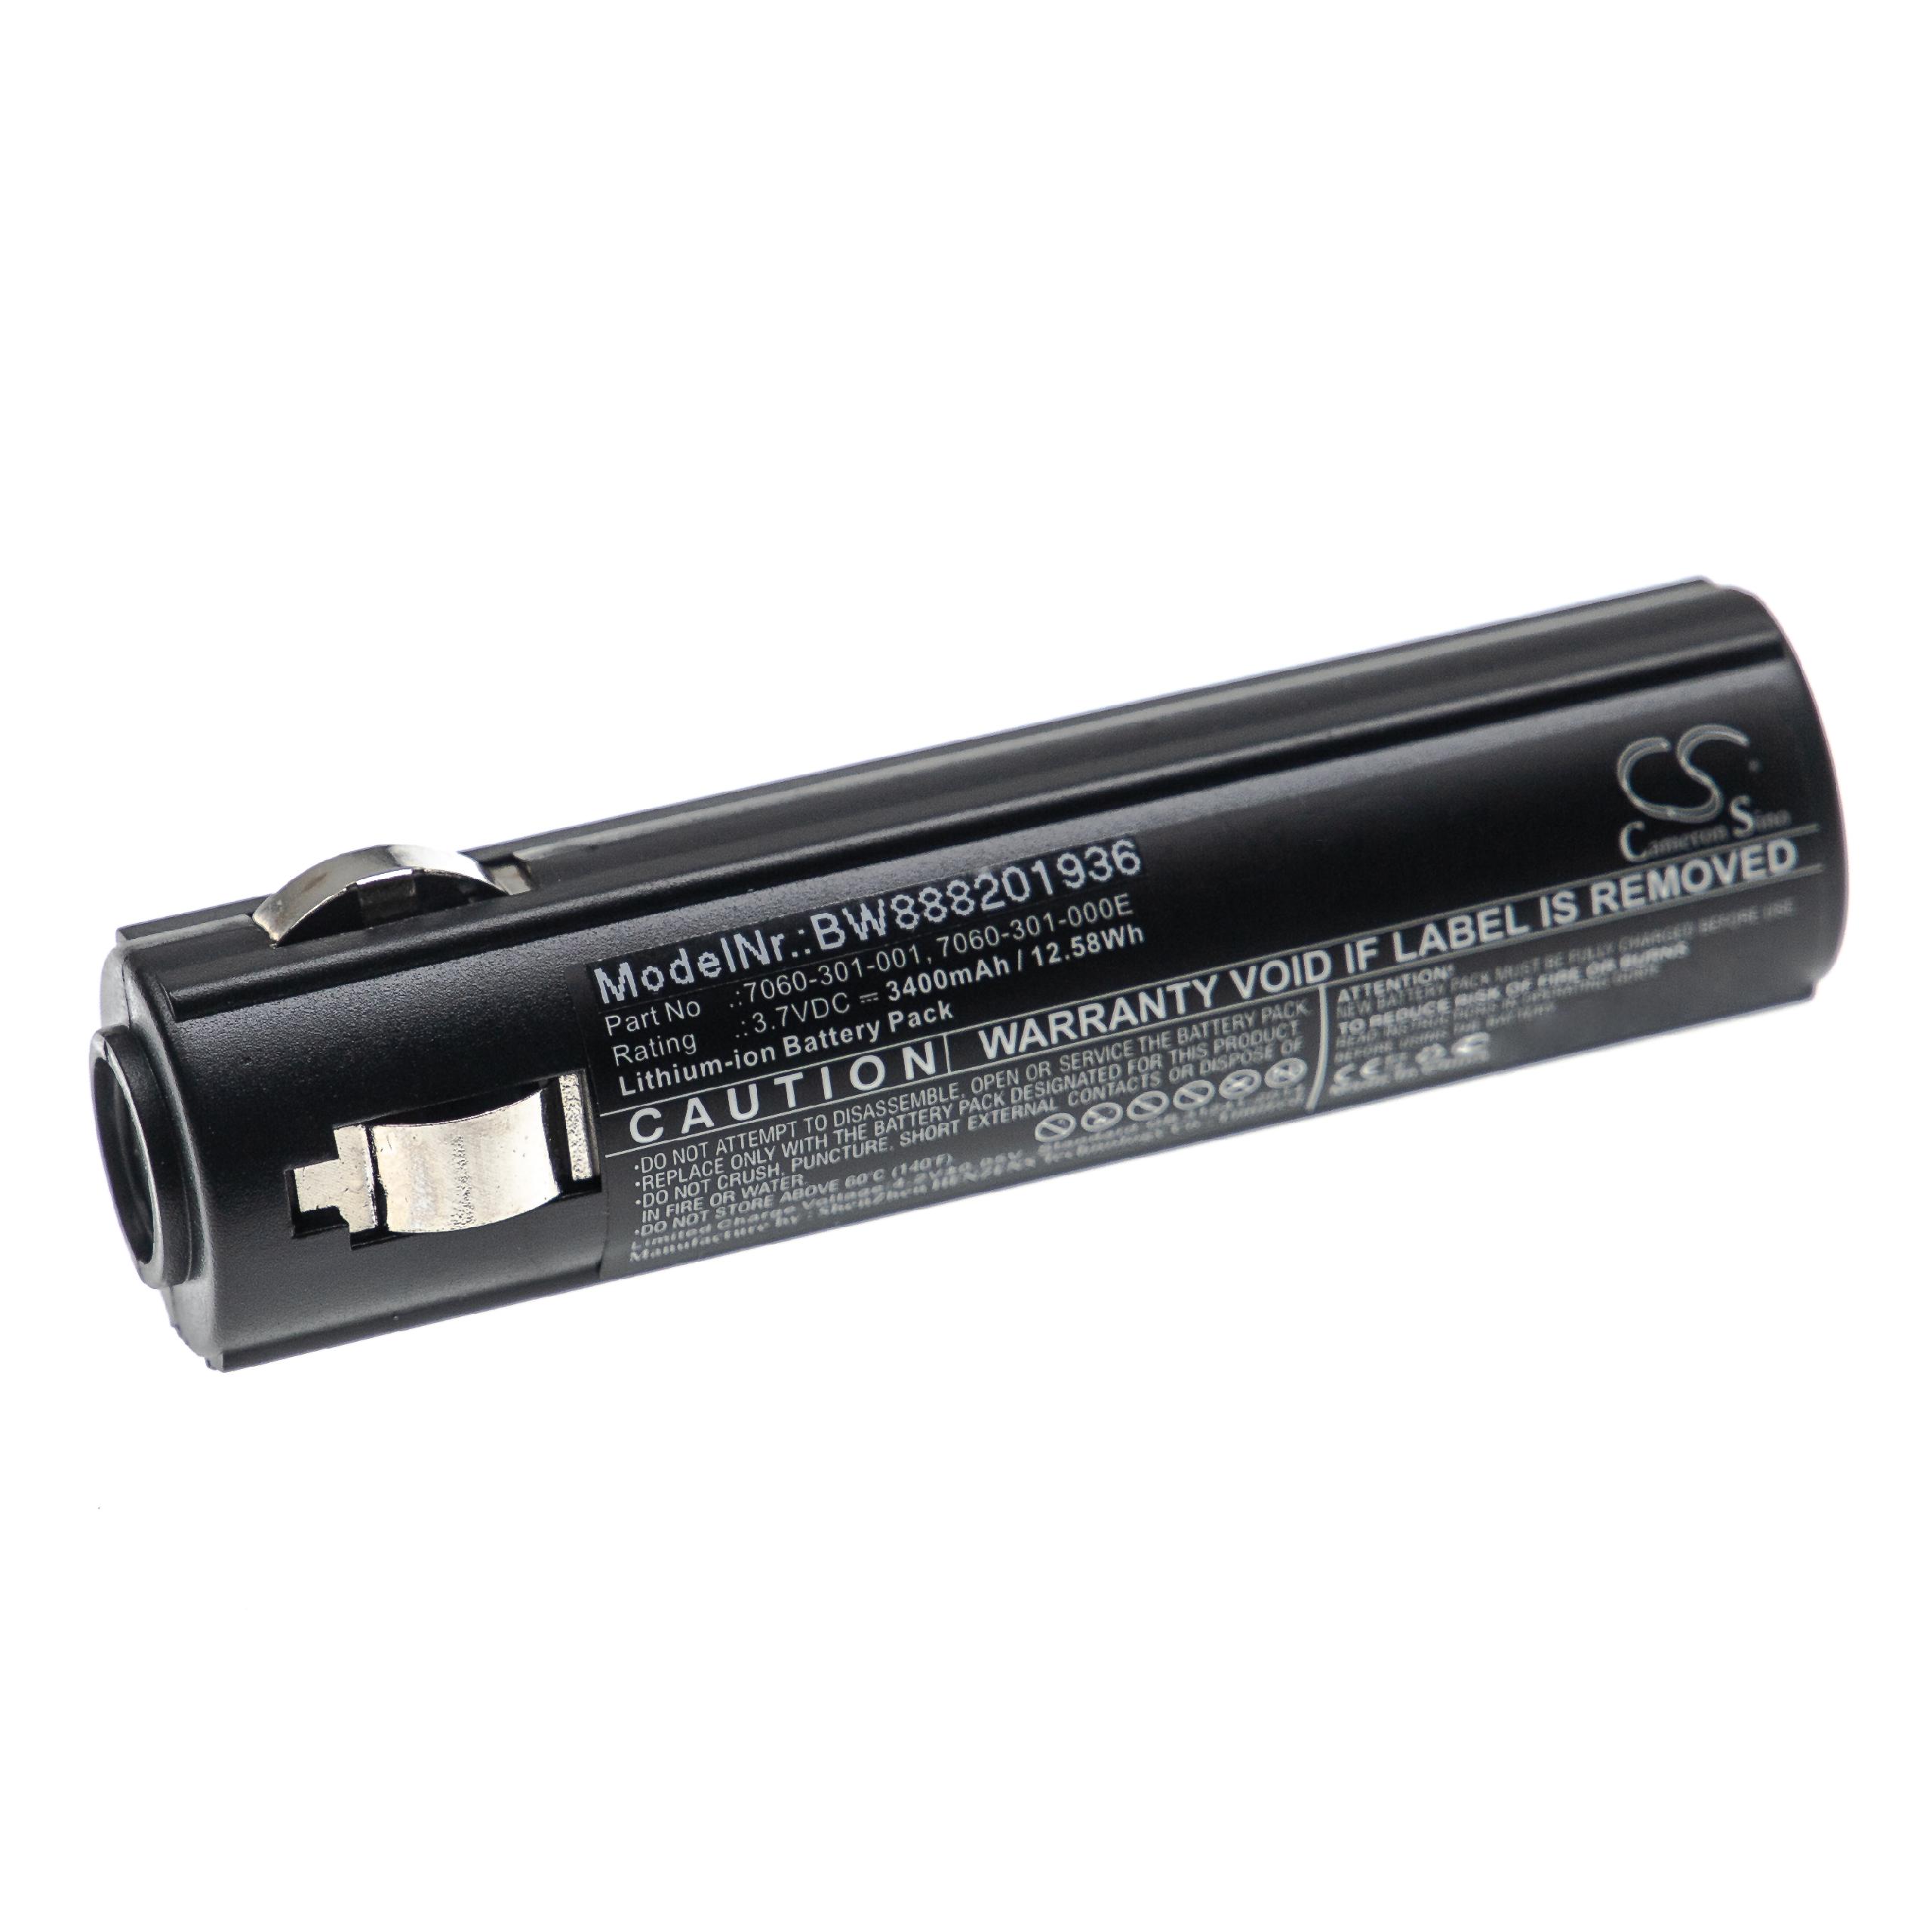 Batterie pour Peli 7060, 7069, 7060-301-000-1, 7060-301-000E, 7060-301-001 pour lampe de poche - 3400mAh 3,7V 